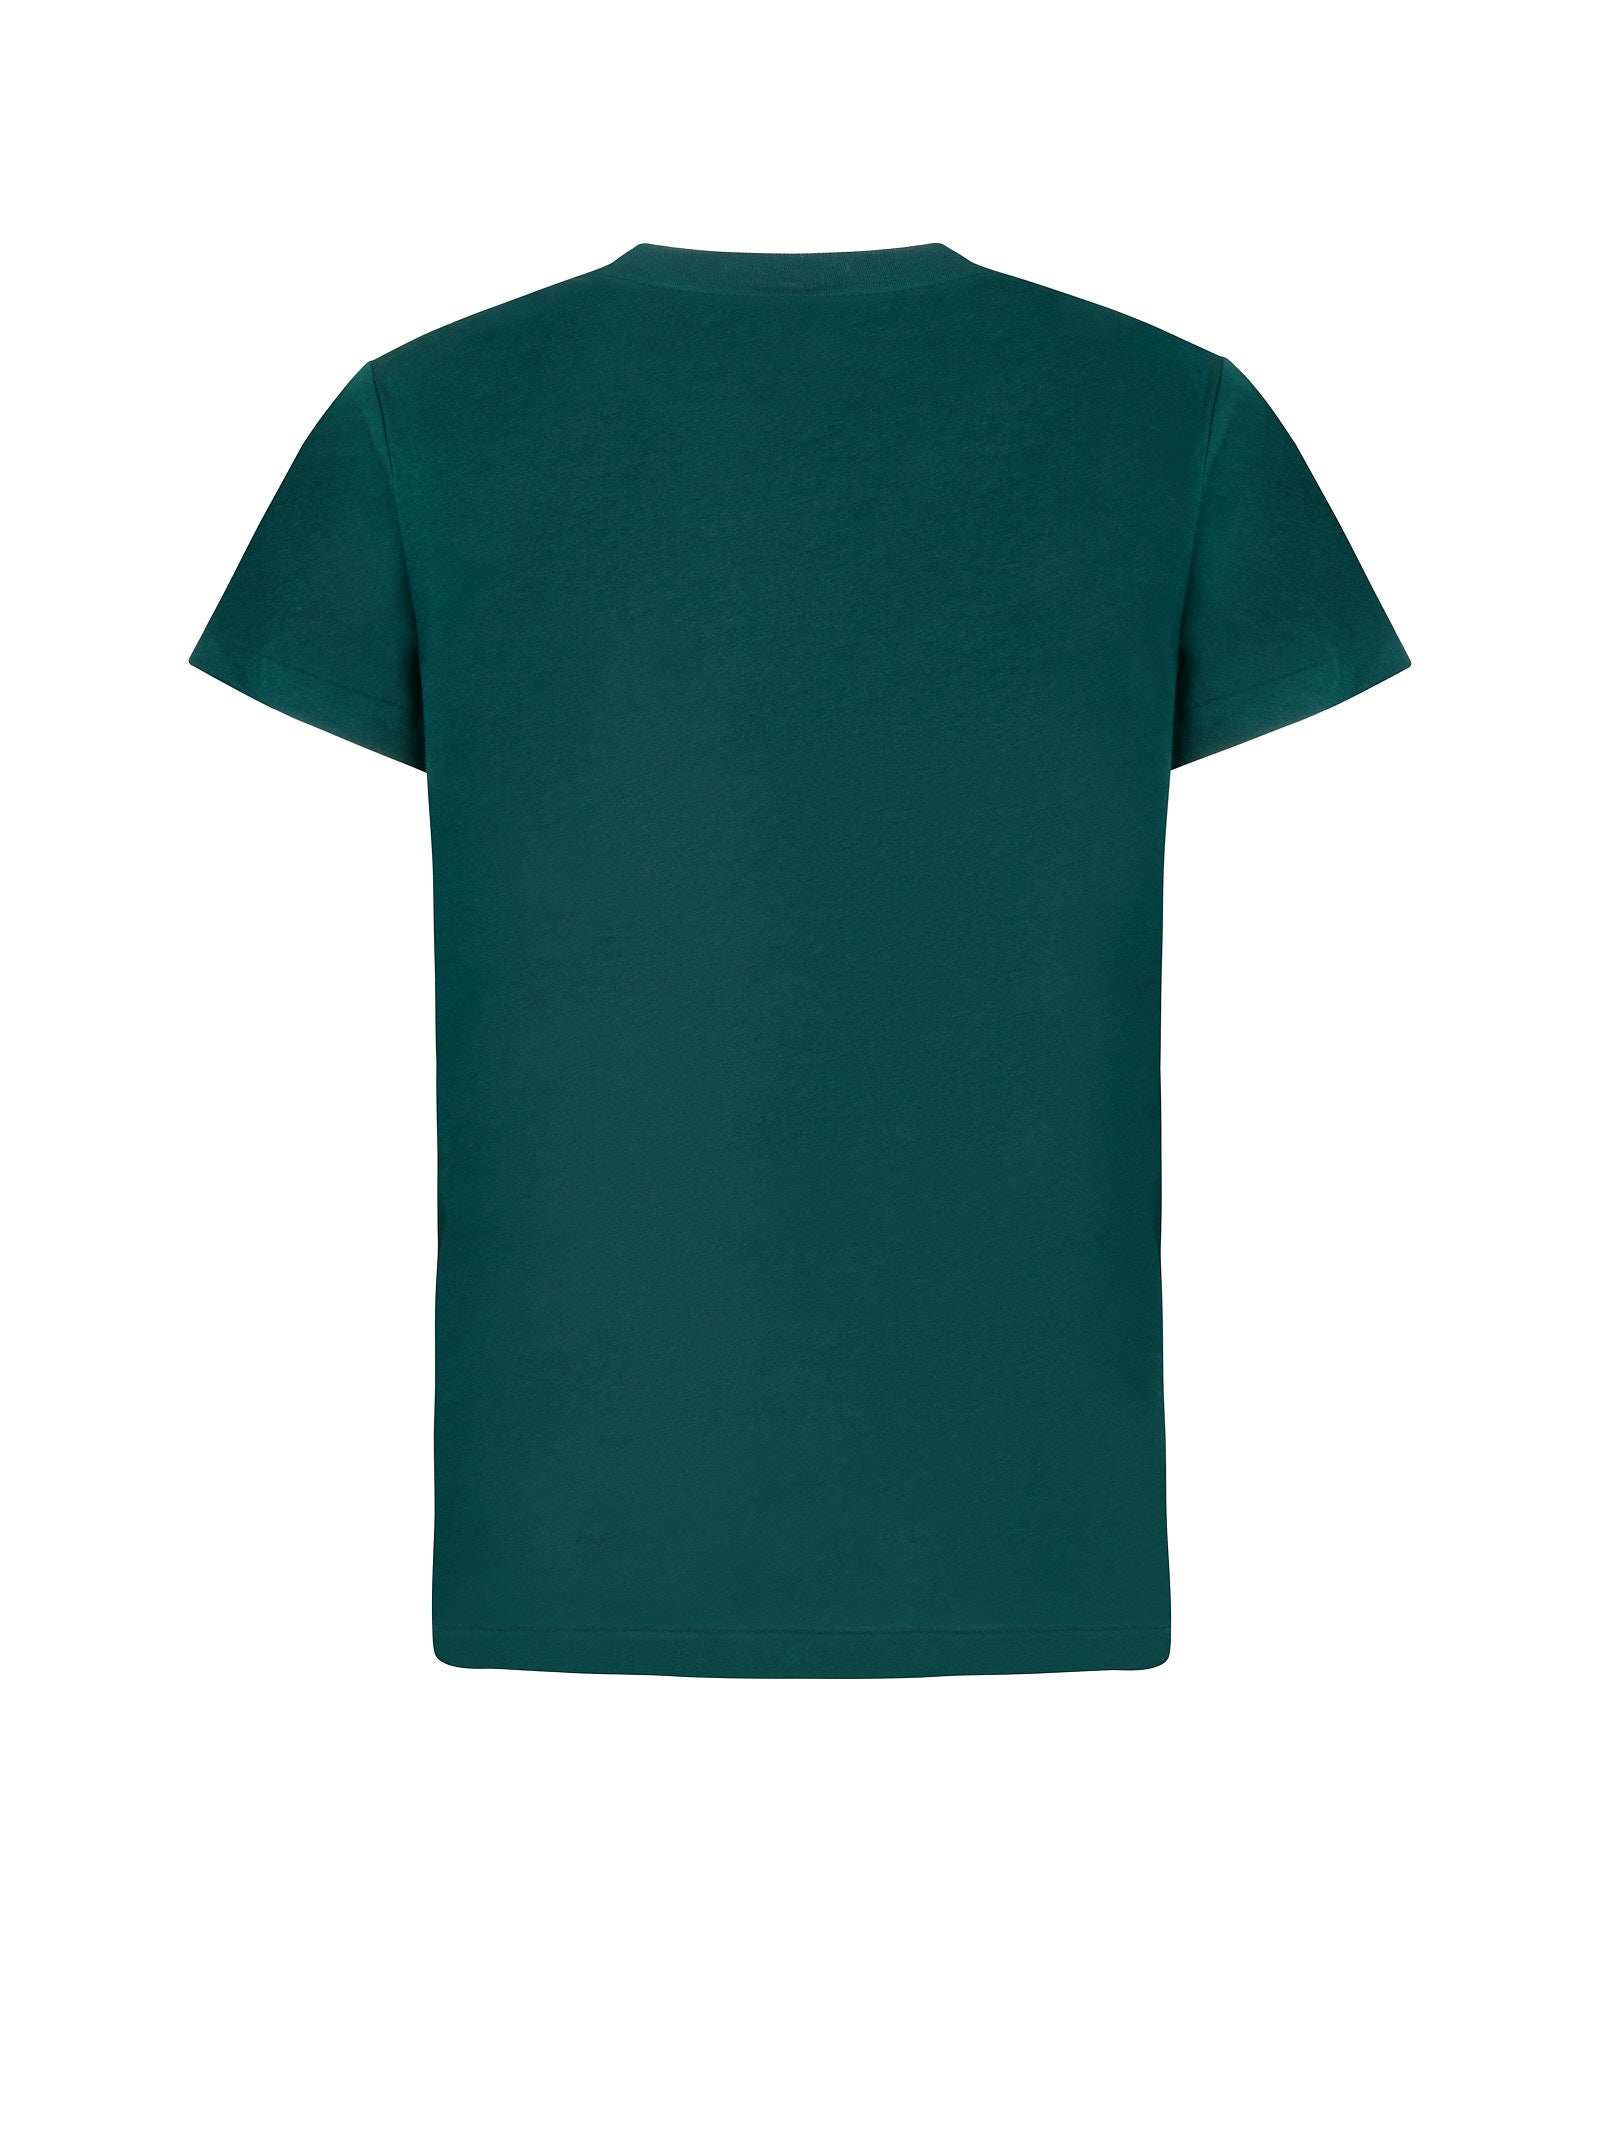 T-shirt POLO RALPH LAUREN
Verde